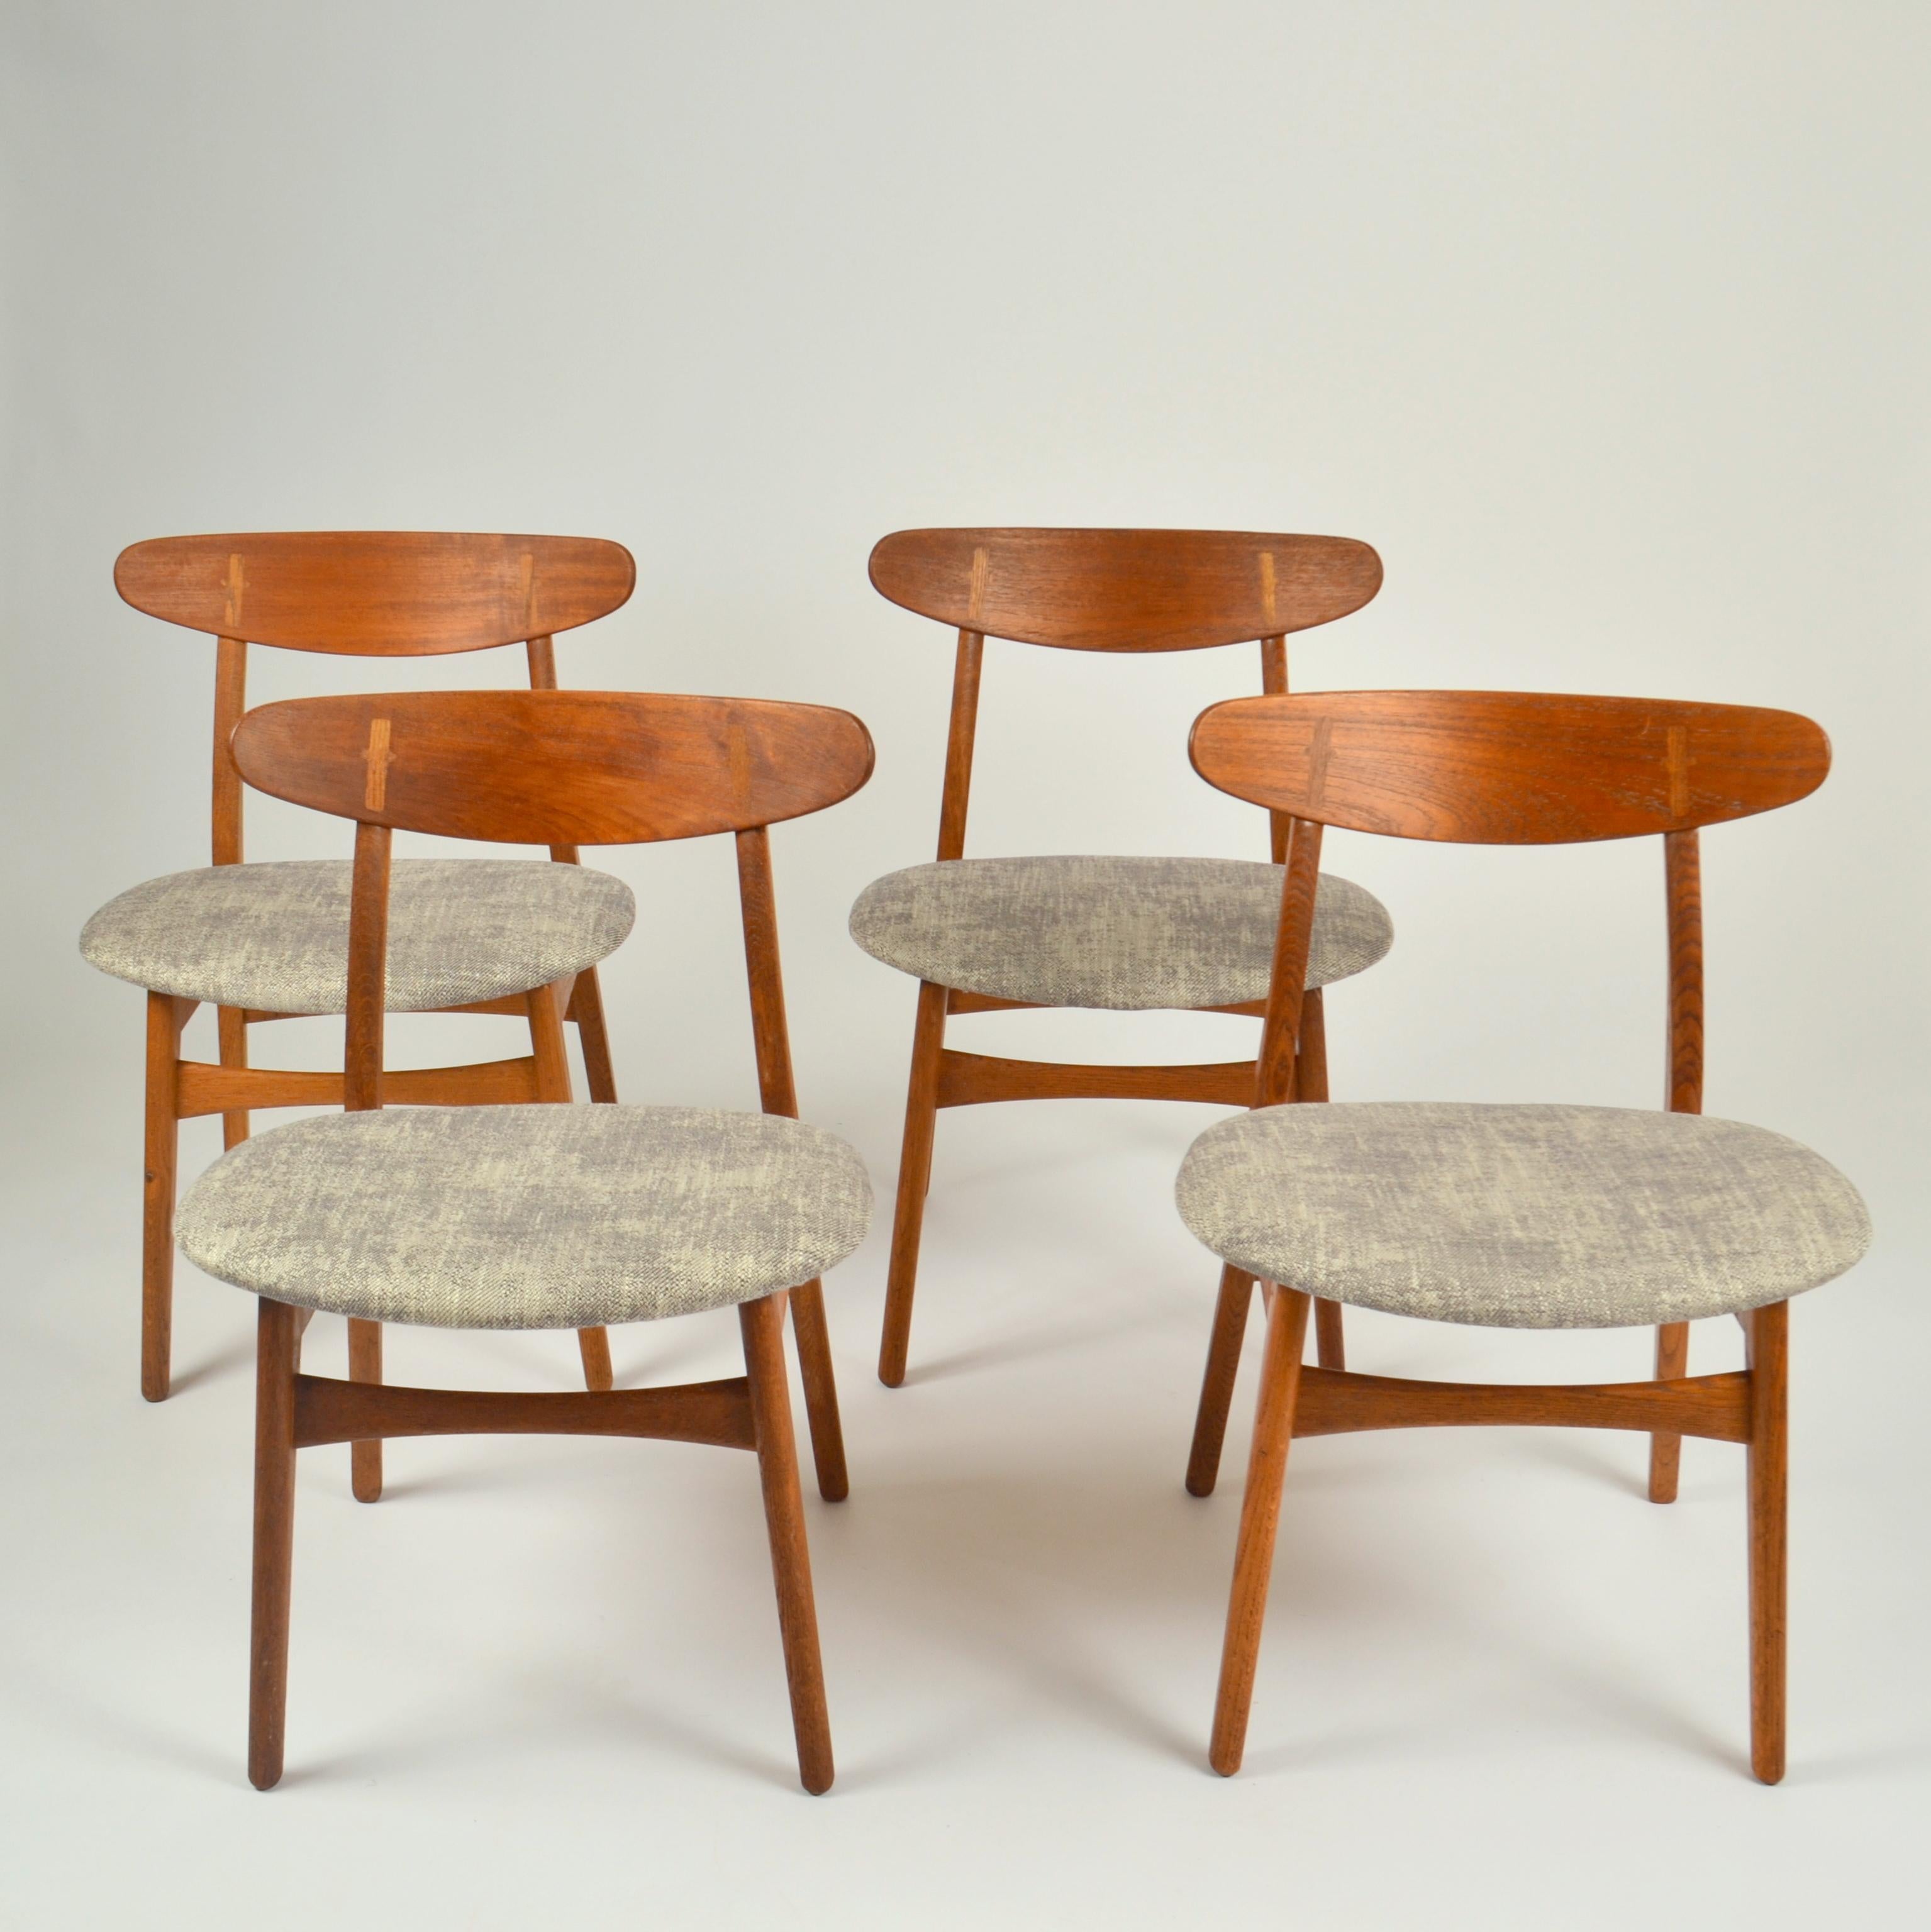 Chaise de salle à manger Hans J. Wegner produite par Carl Hansen & Søn au Danemark, modèle 'CH 30', en chêne massif et tapissée de lin texturé gris clair, conçue en 1954, production ultérieure. Ce design n'est actuellement plus en production. Les